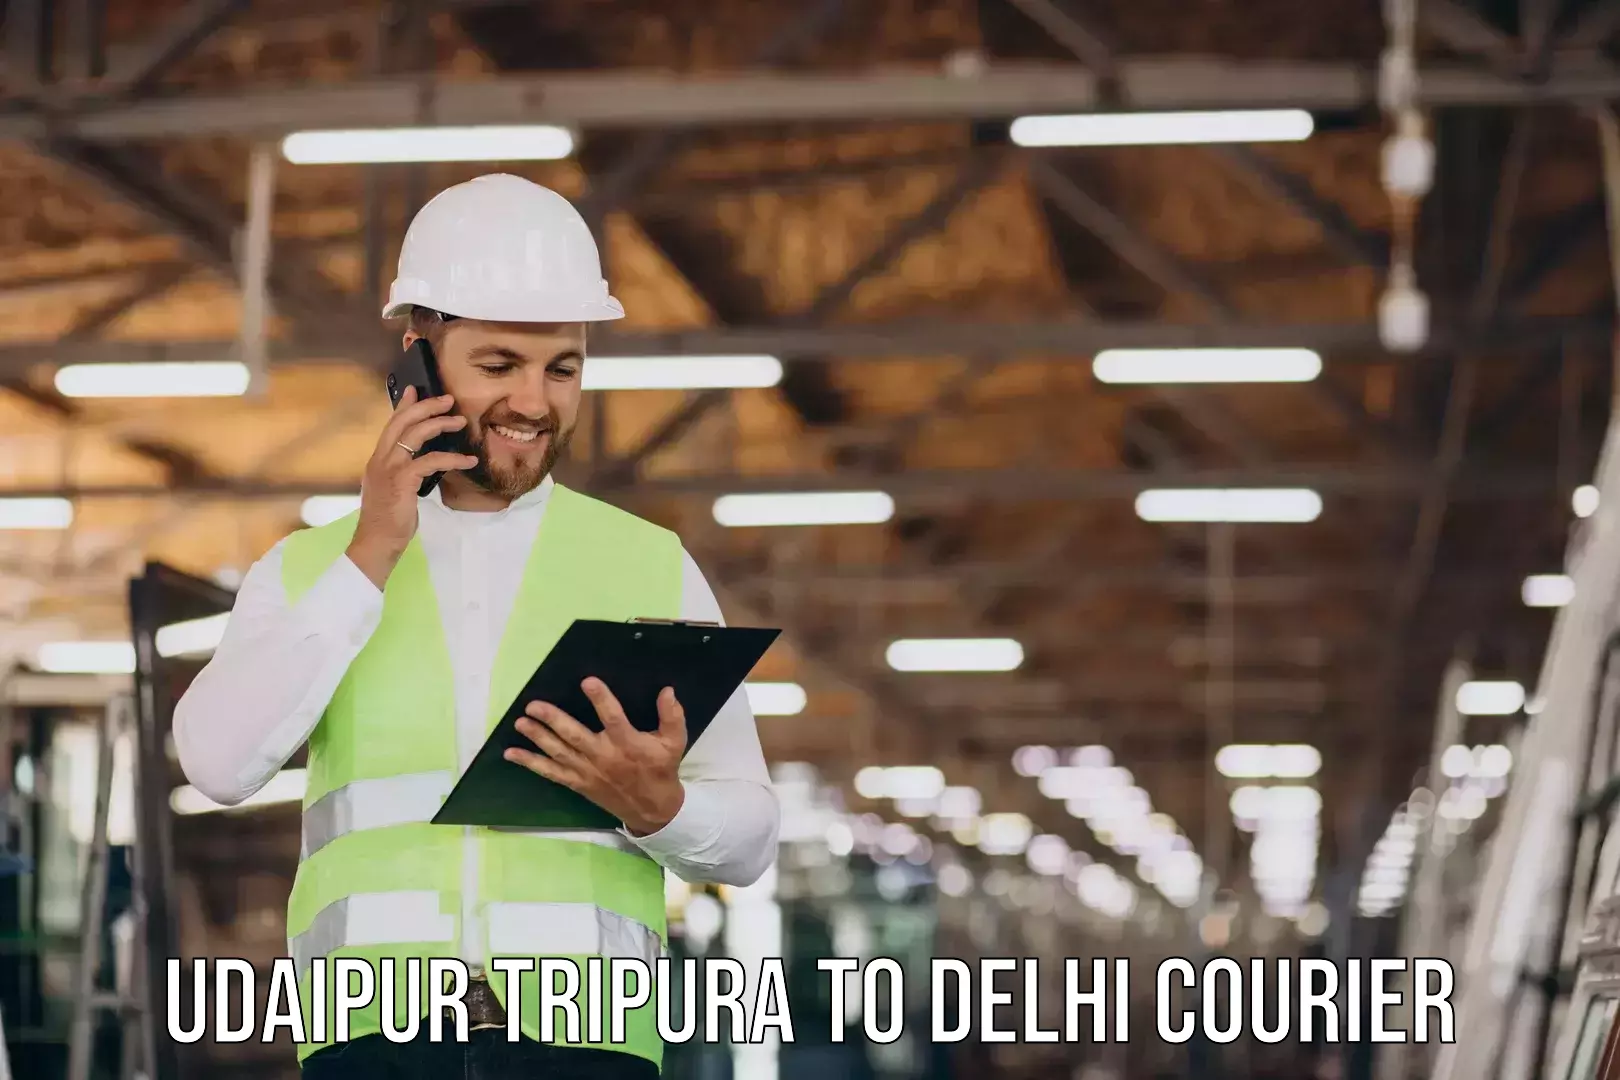 Furniture transport professionals Udaipur Tripura to IIT Delhi